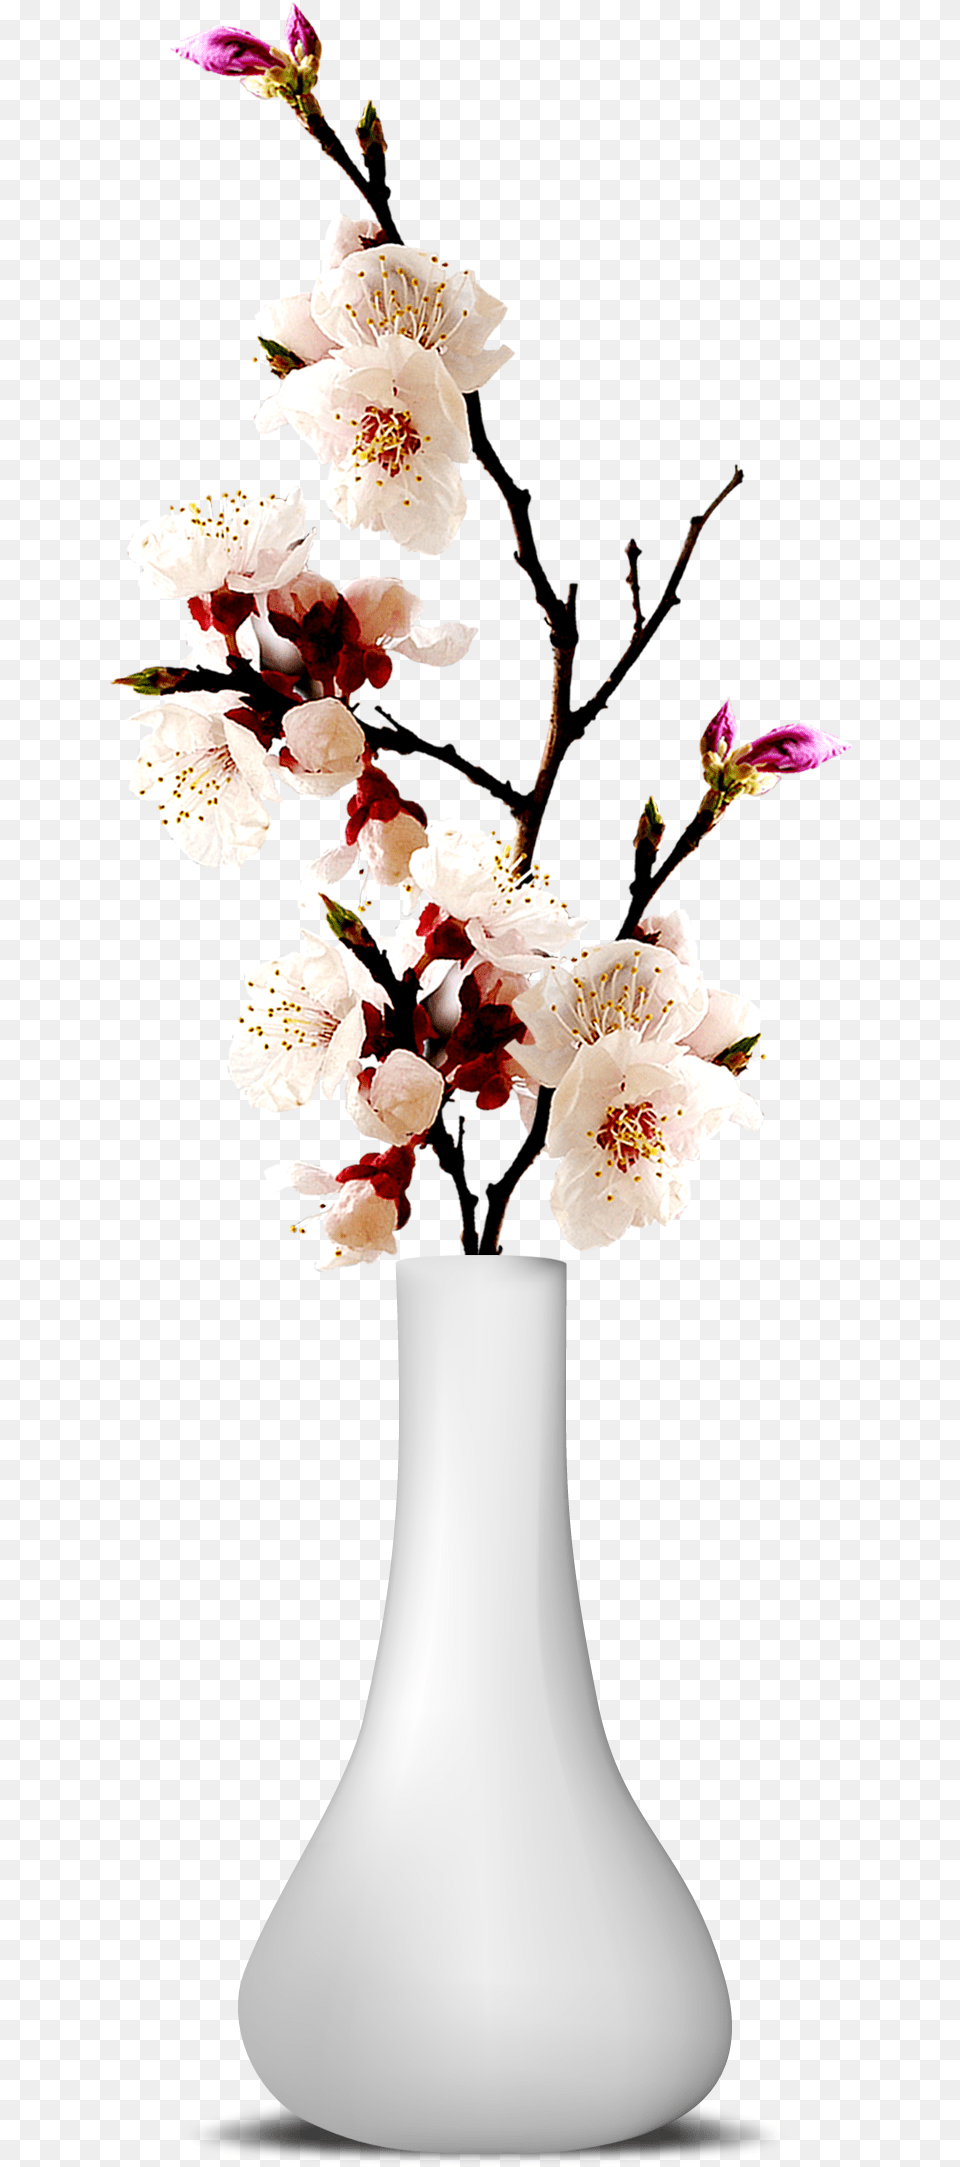 Flower Vase Transparent Image Transparent Flower Vase, Flower Arrangement, Flower Bouquet, Jar, Plant Free Png Download